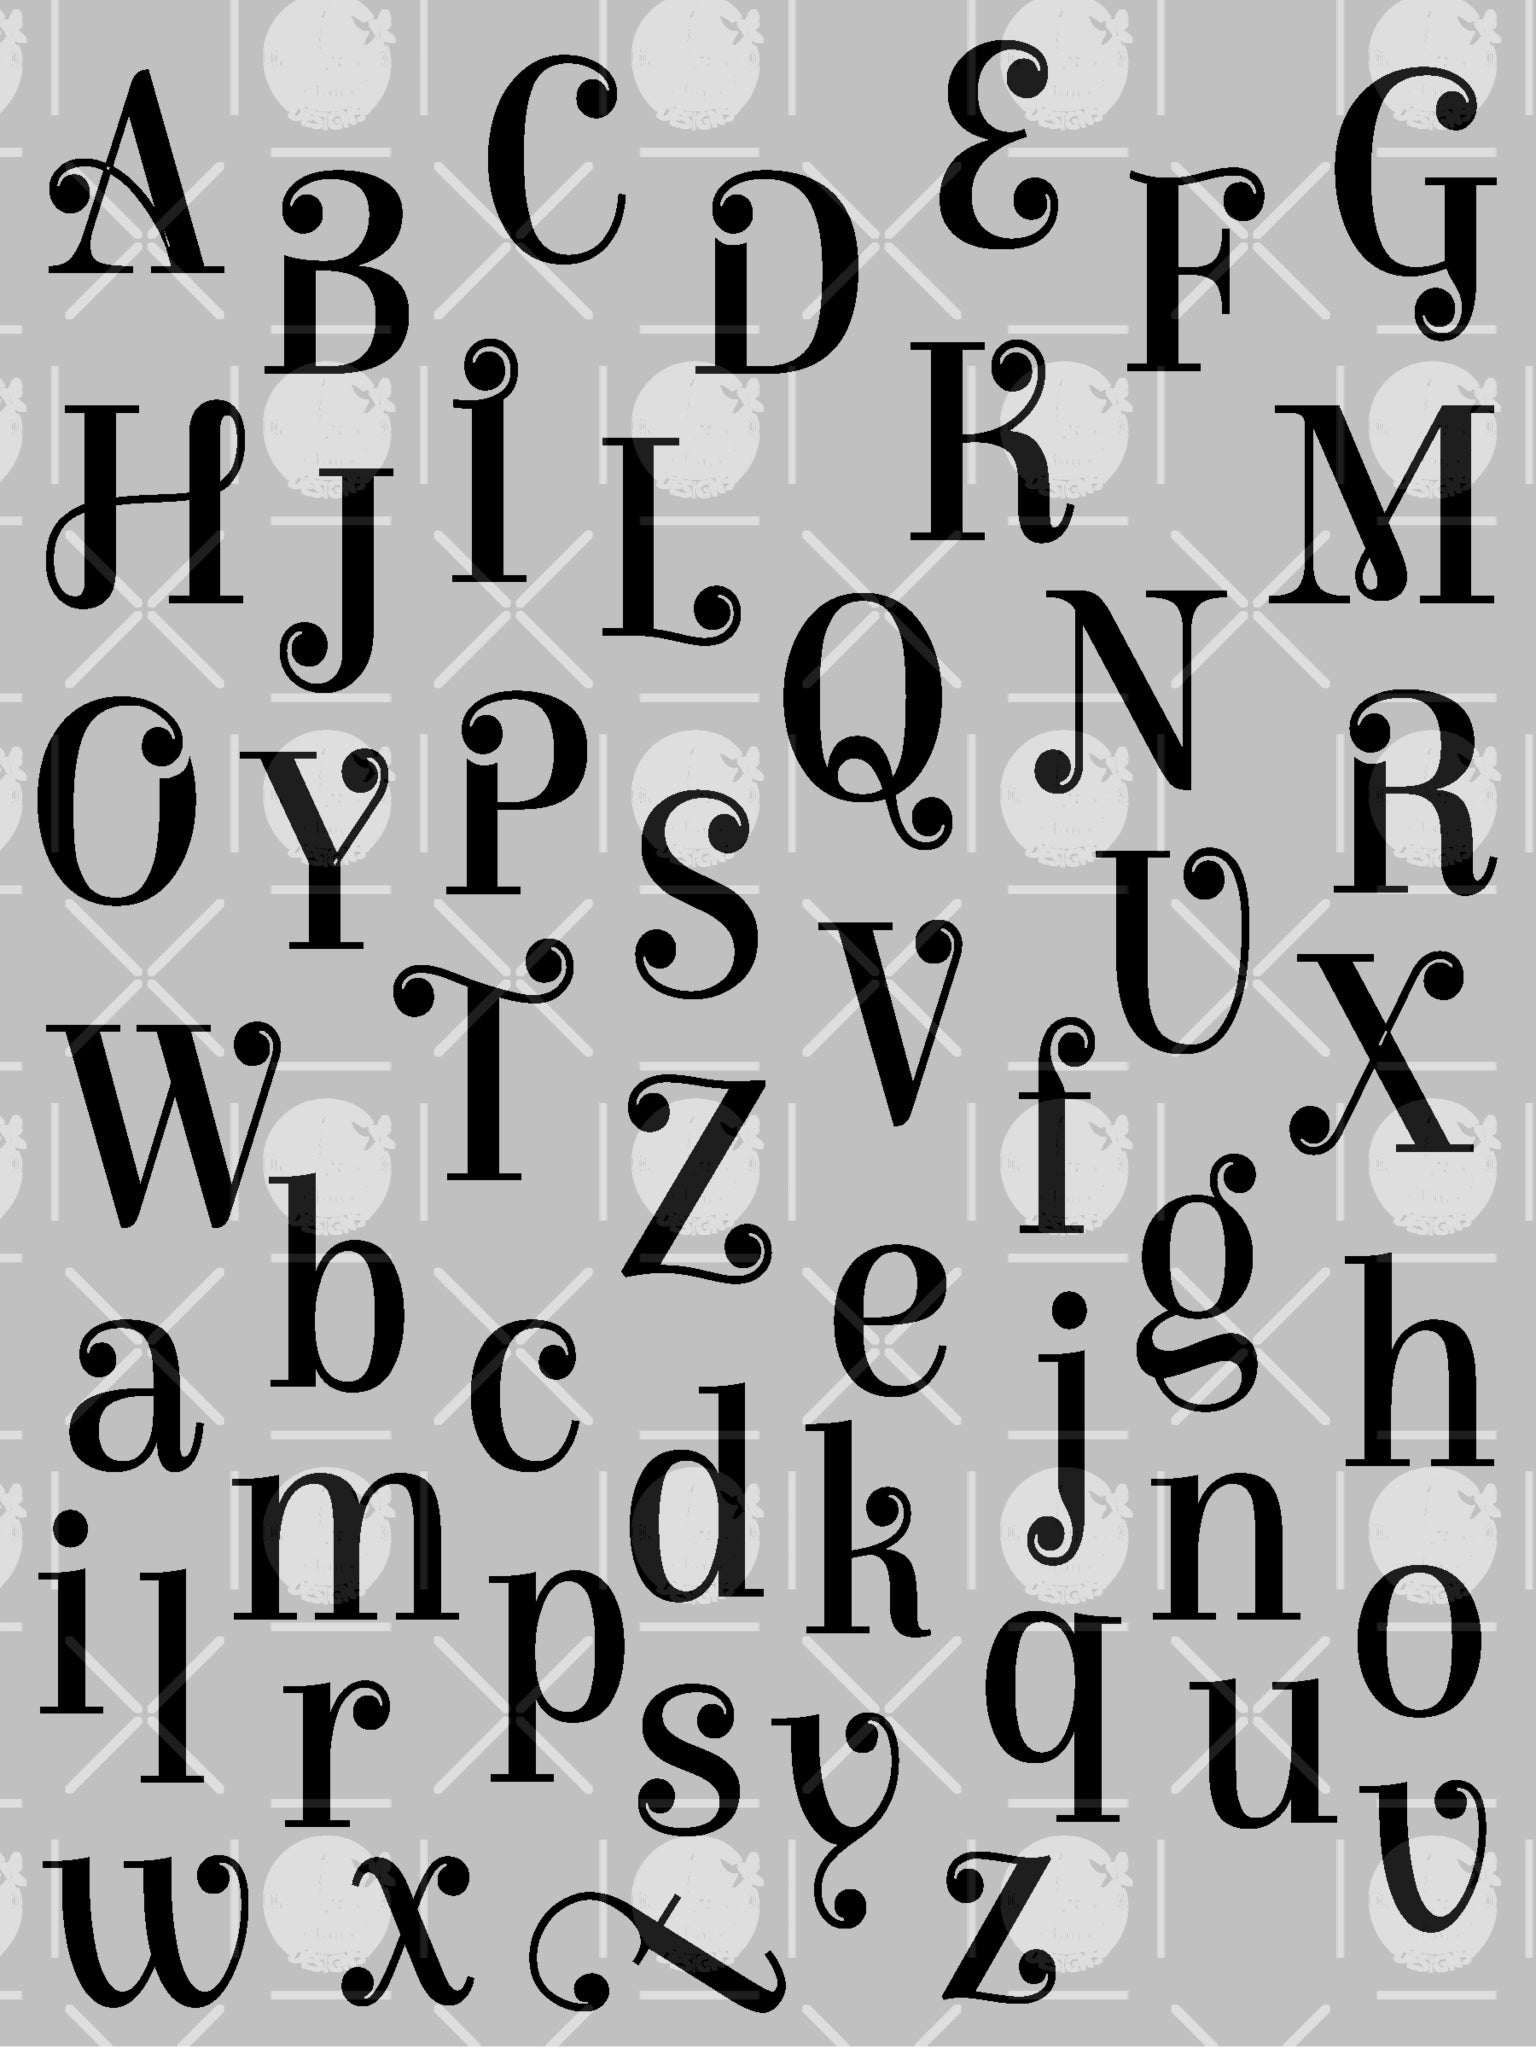 Fancy Alphabet Letter Templates